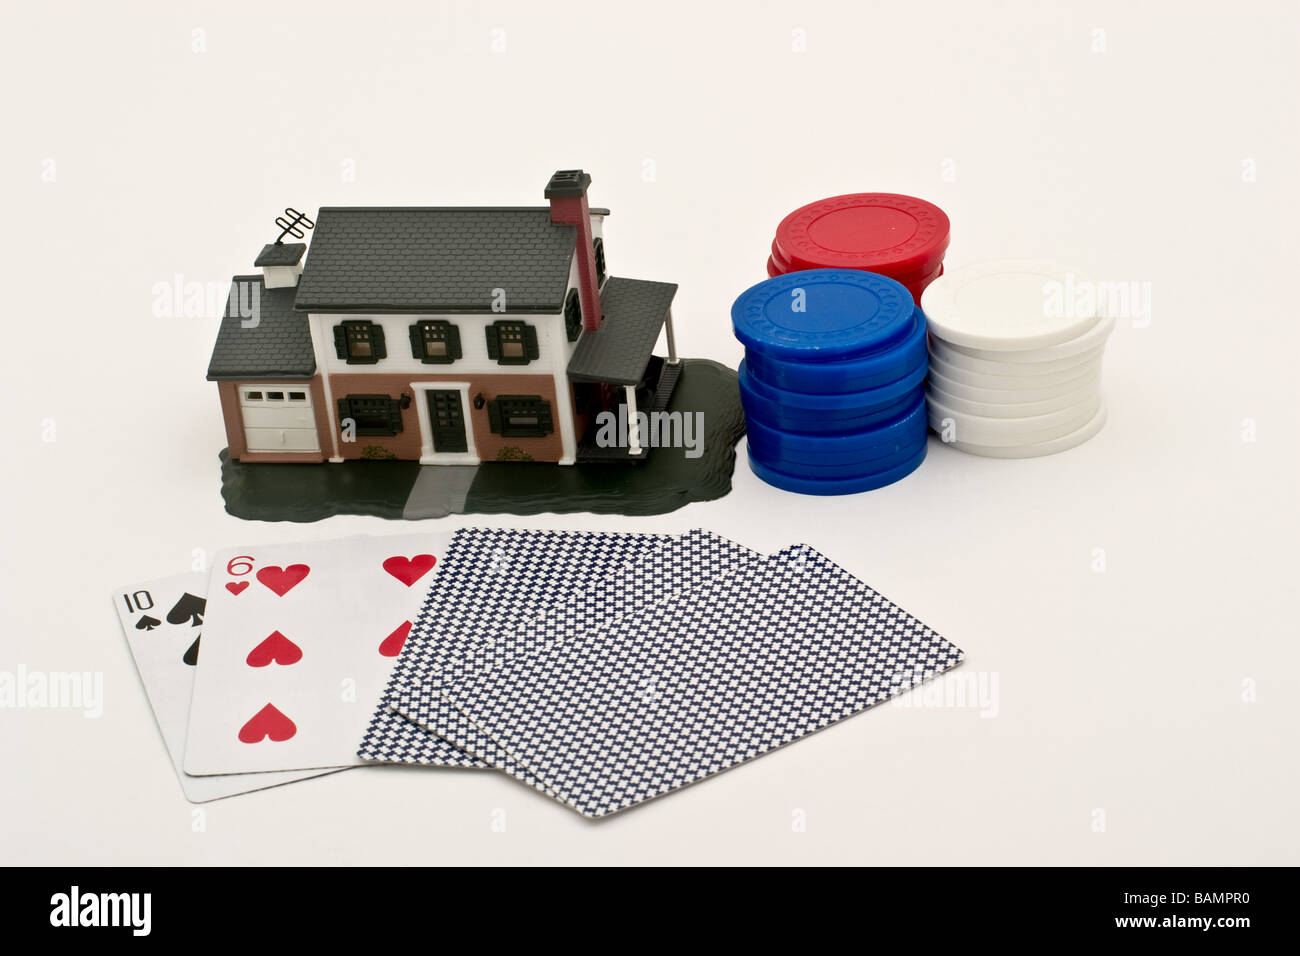 Main de poker avec trois piles de jetons en plastique avant d'une réplique d'une maison de banlieue Banque D'Images